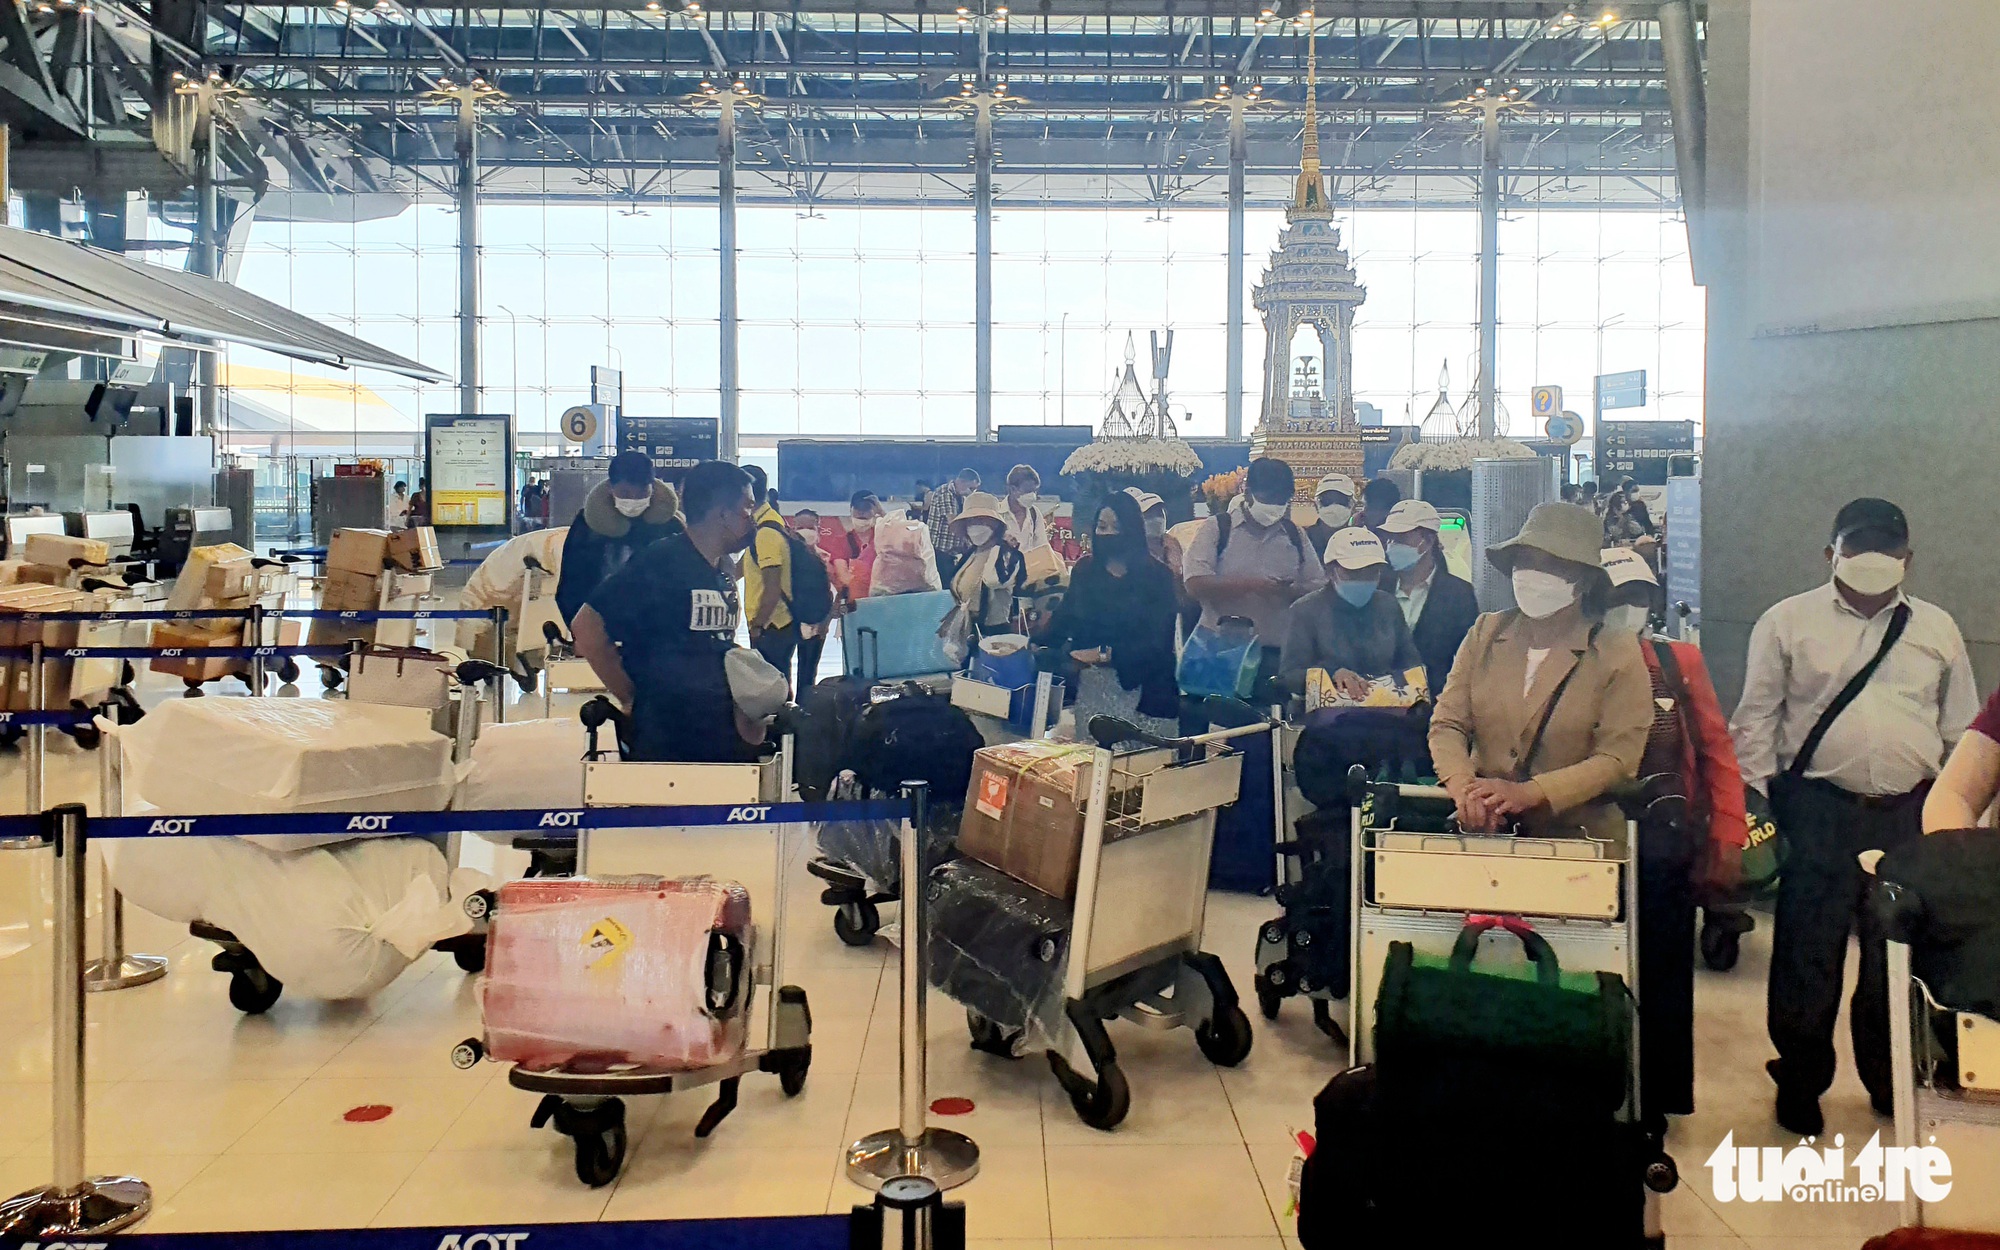 Vé máy bay Tết tăng giá mạnh, hành khách bày chiêu bay vòng Thái Lan về Hà Nội rẻ hơn - Ảnh 4.